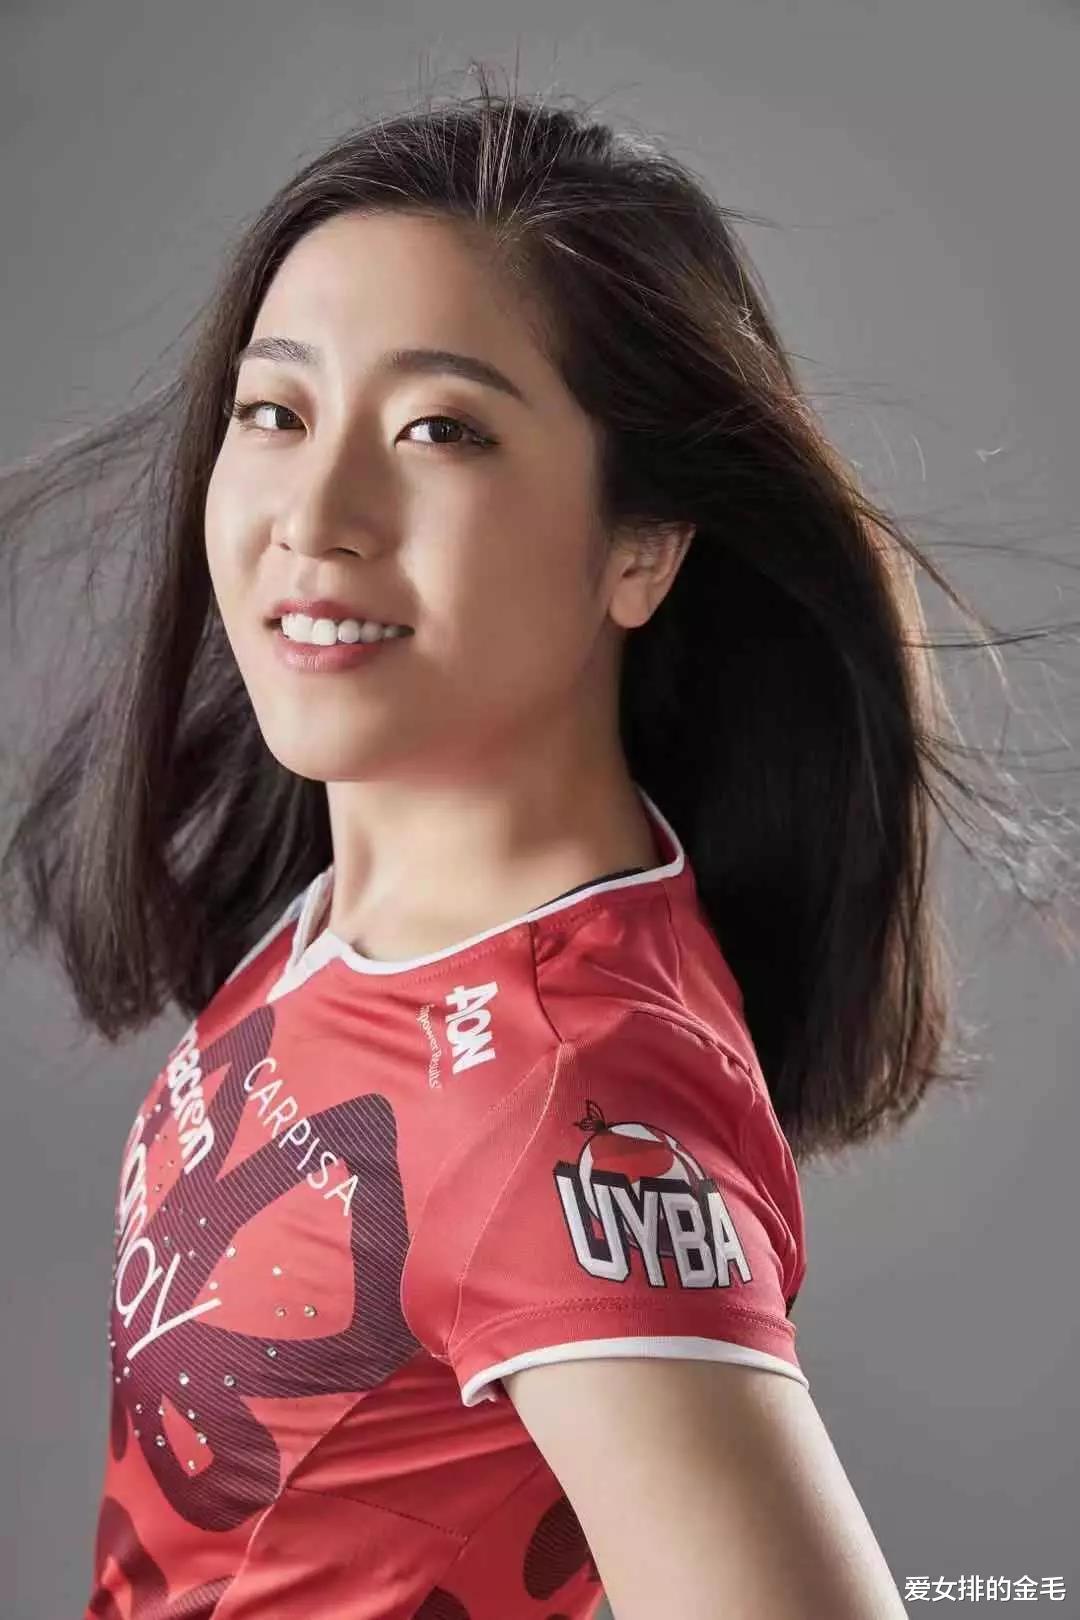 唯一参加欧冠的中国队员，她得到多俱乐部看中！国家队请给她机会(3)